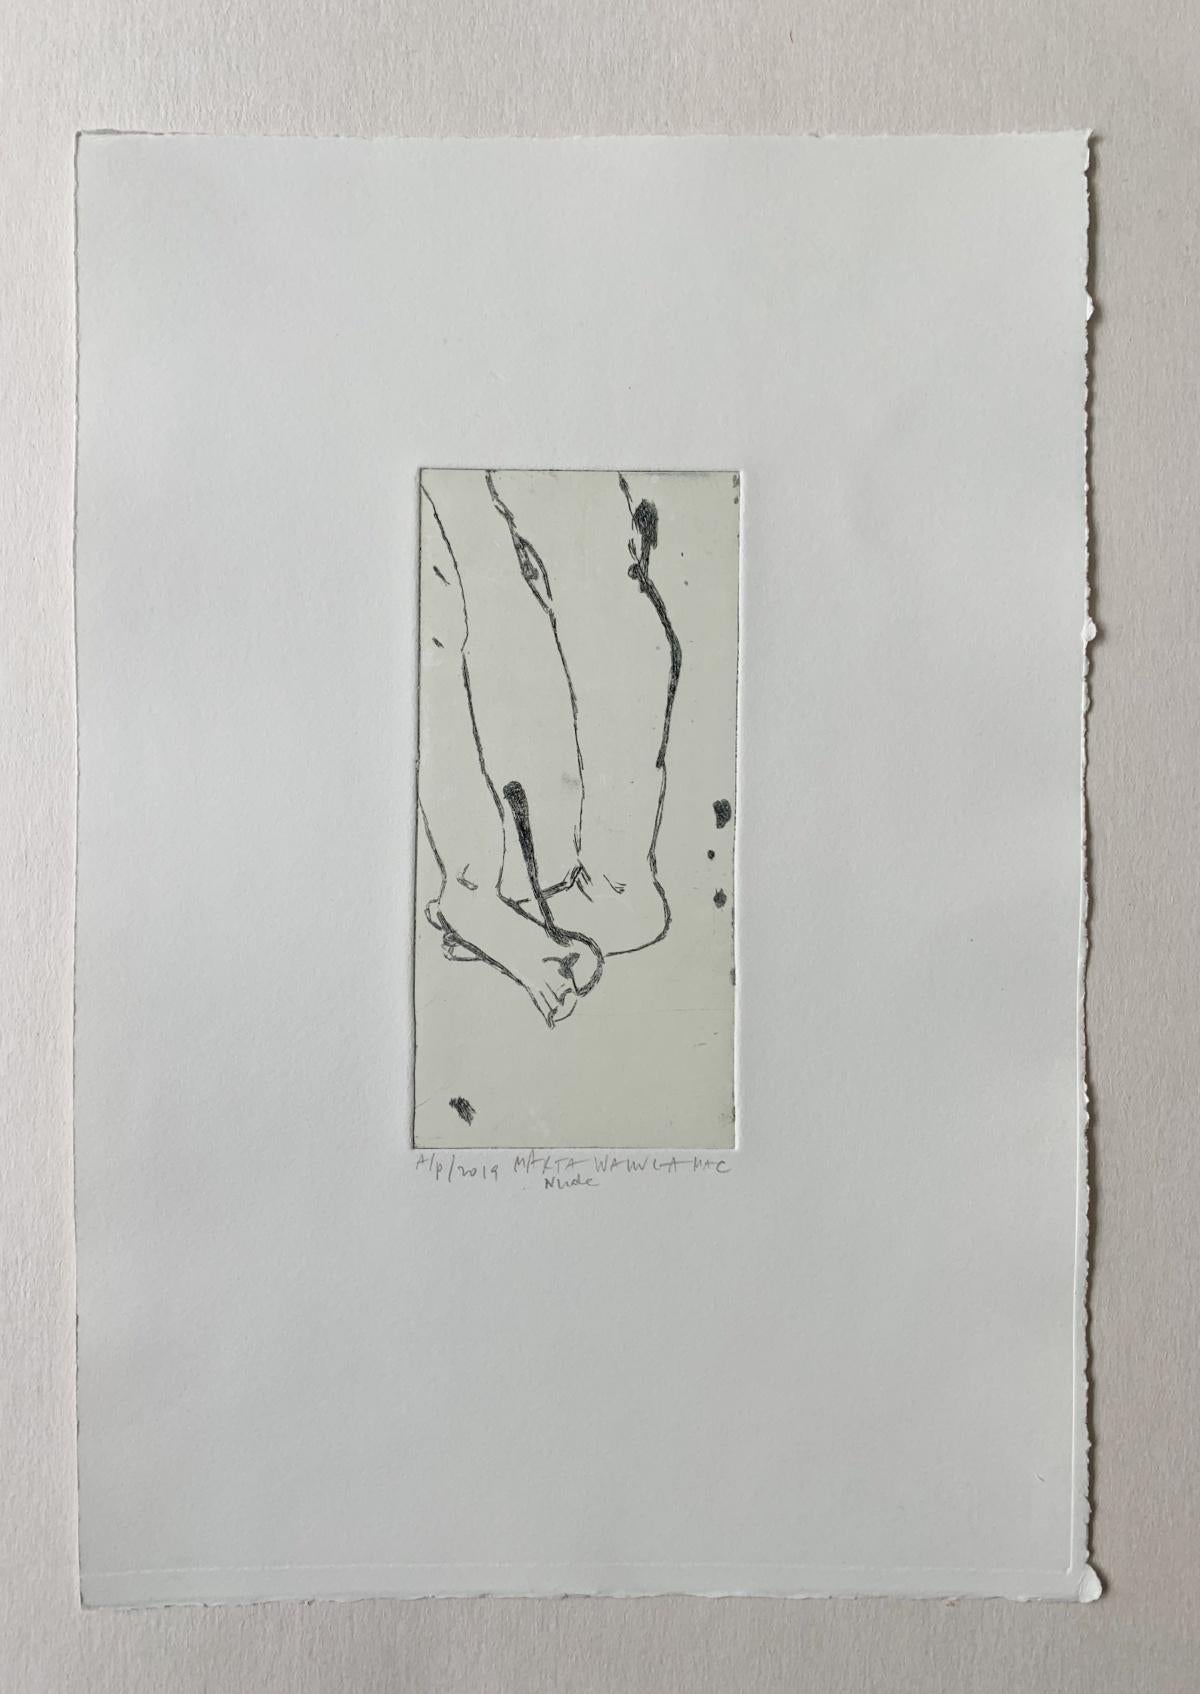 Nude - Zeitgenössischer figurativer Radierungsdruck, weibliche Künstlerin, polnische Kunst – Print von Marta Wakula-Mac